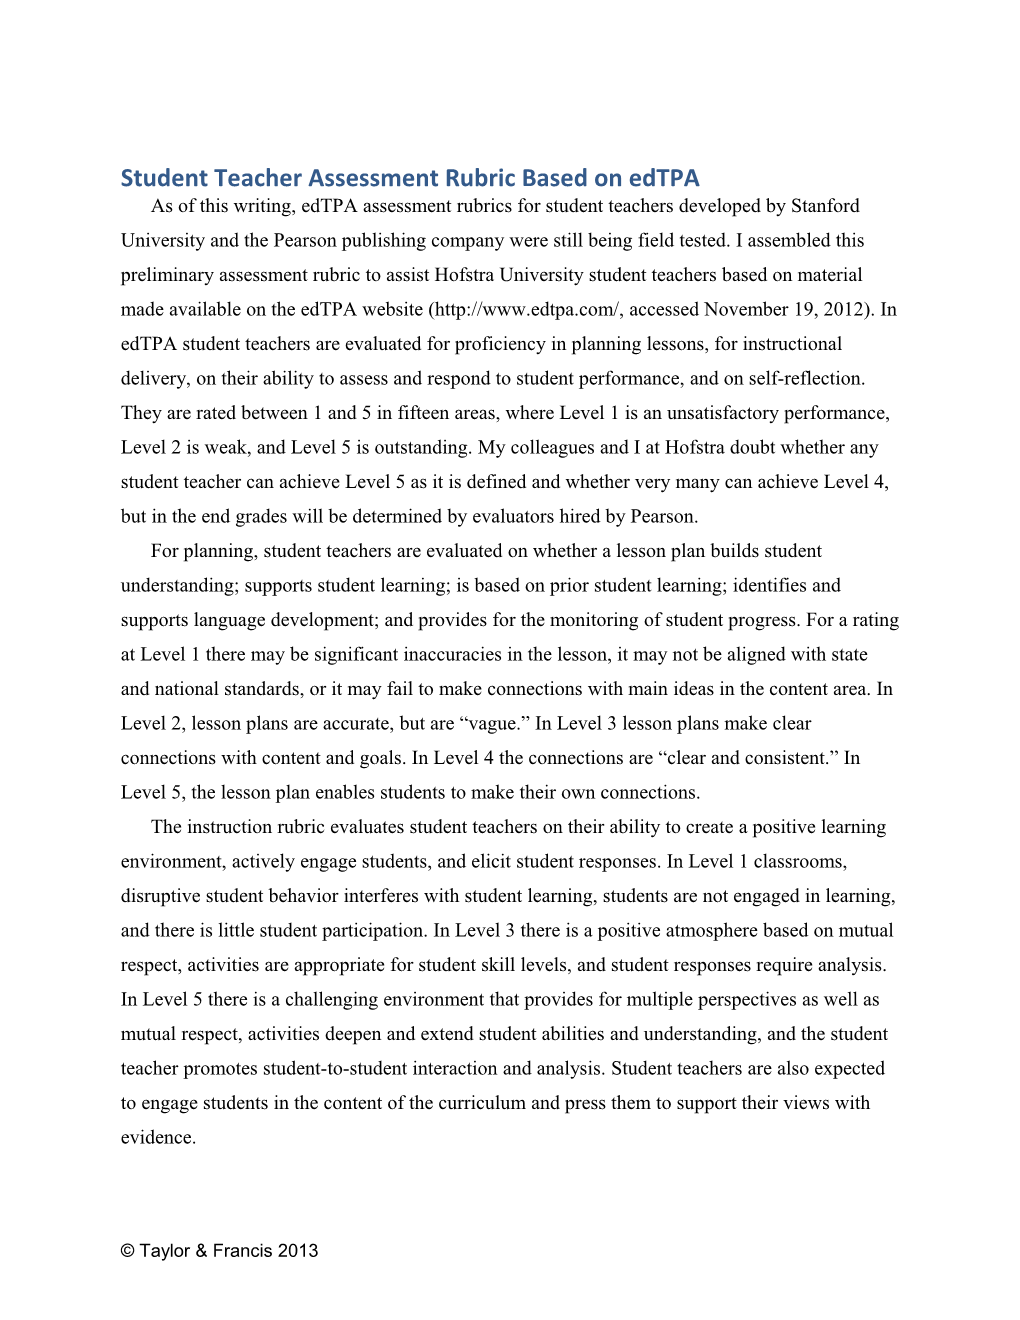 Student Teacher Assessment Rubric Based on Edtpa